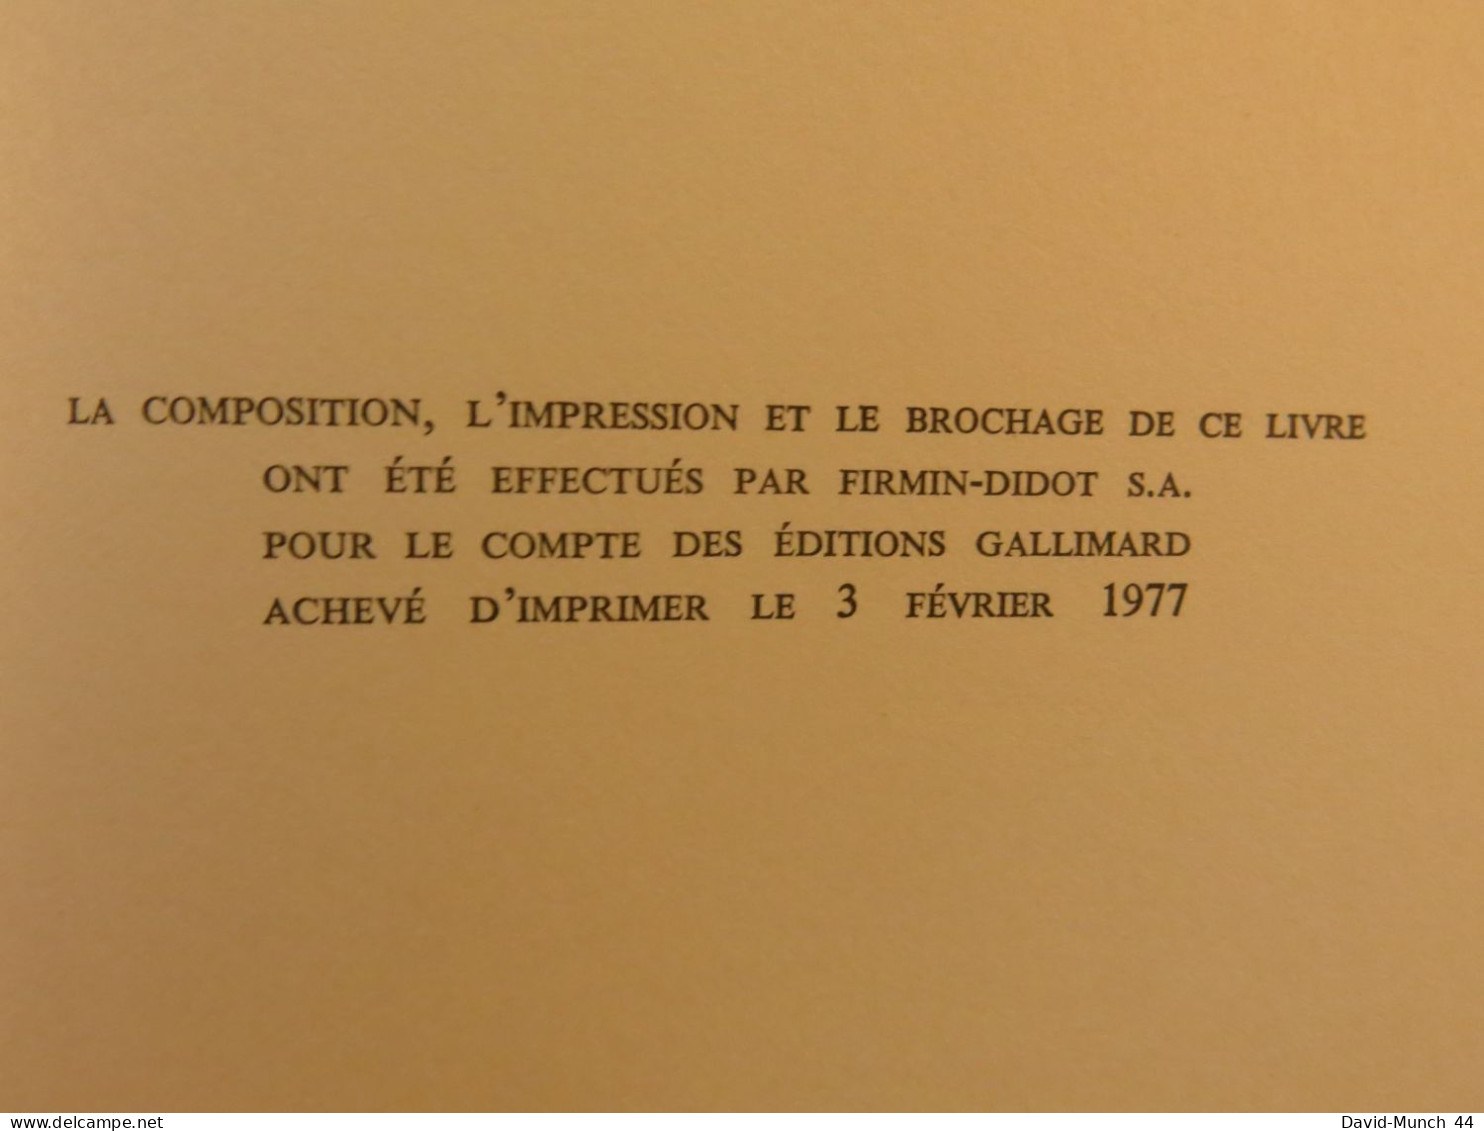 La Puissance et la sagesse de Georges Friedmann. Gallimard, Collection Tel. 1977